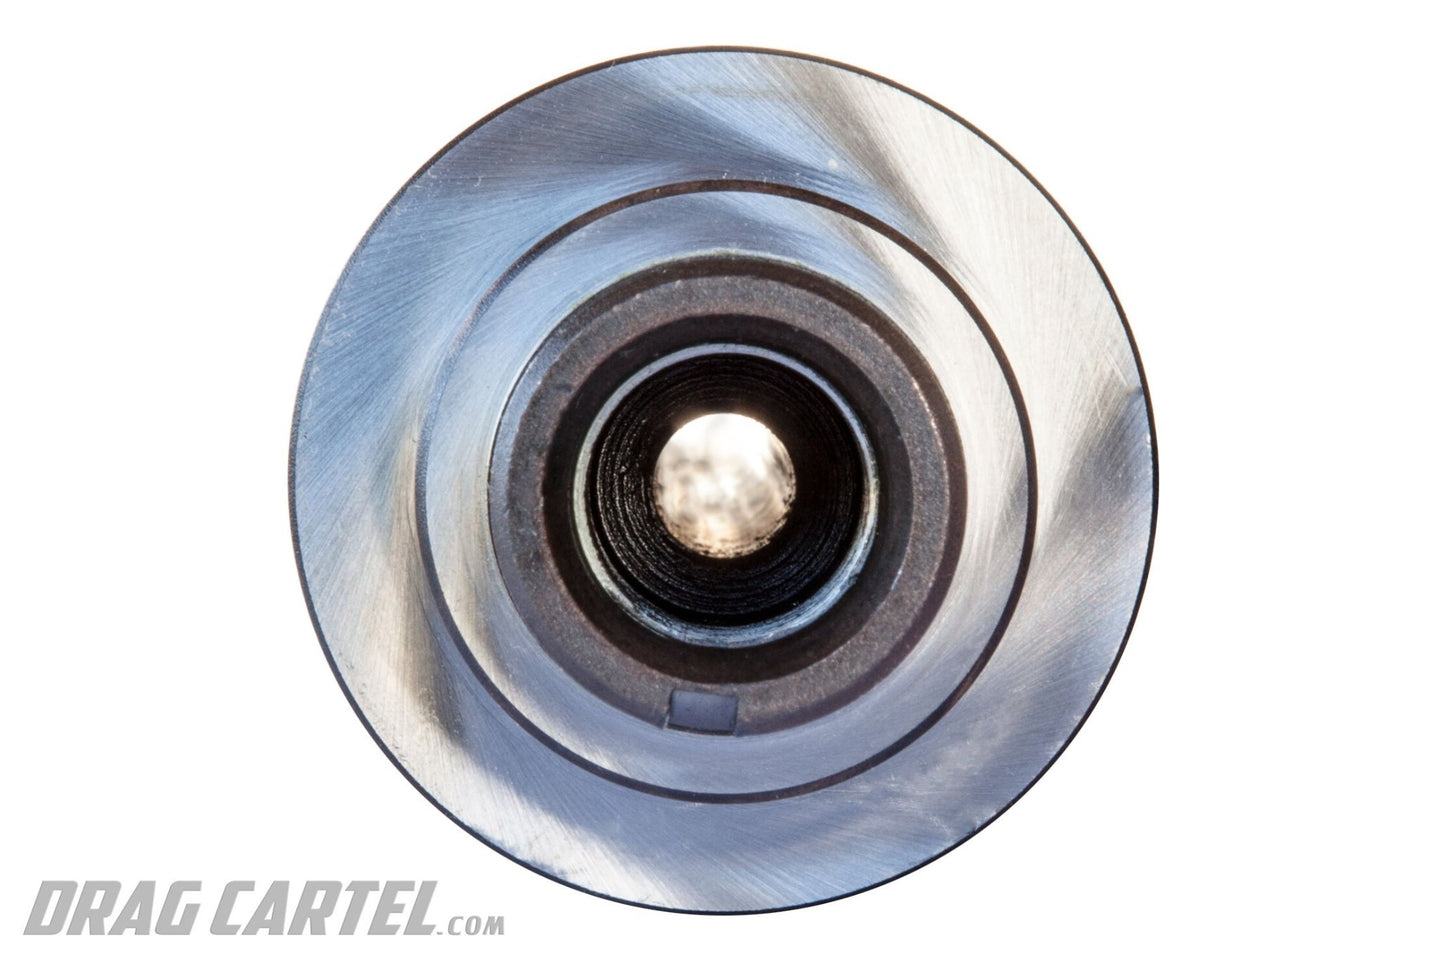 Drag Cartel - Camshafts - 002.2 Endurance K-Series